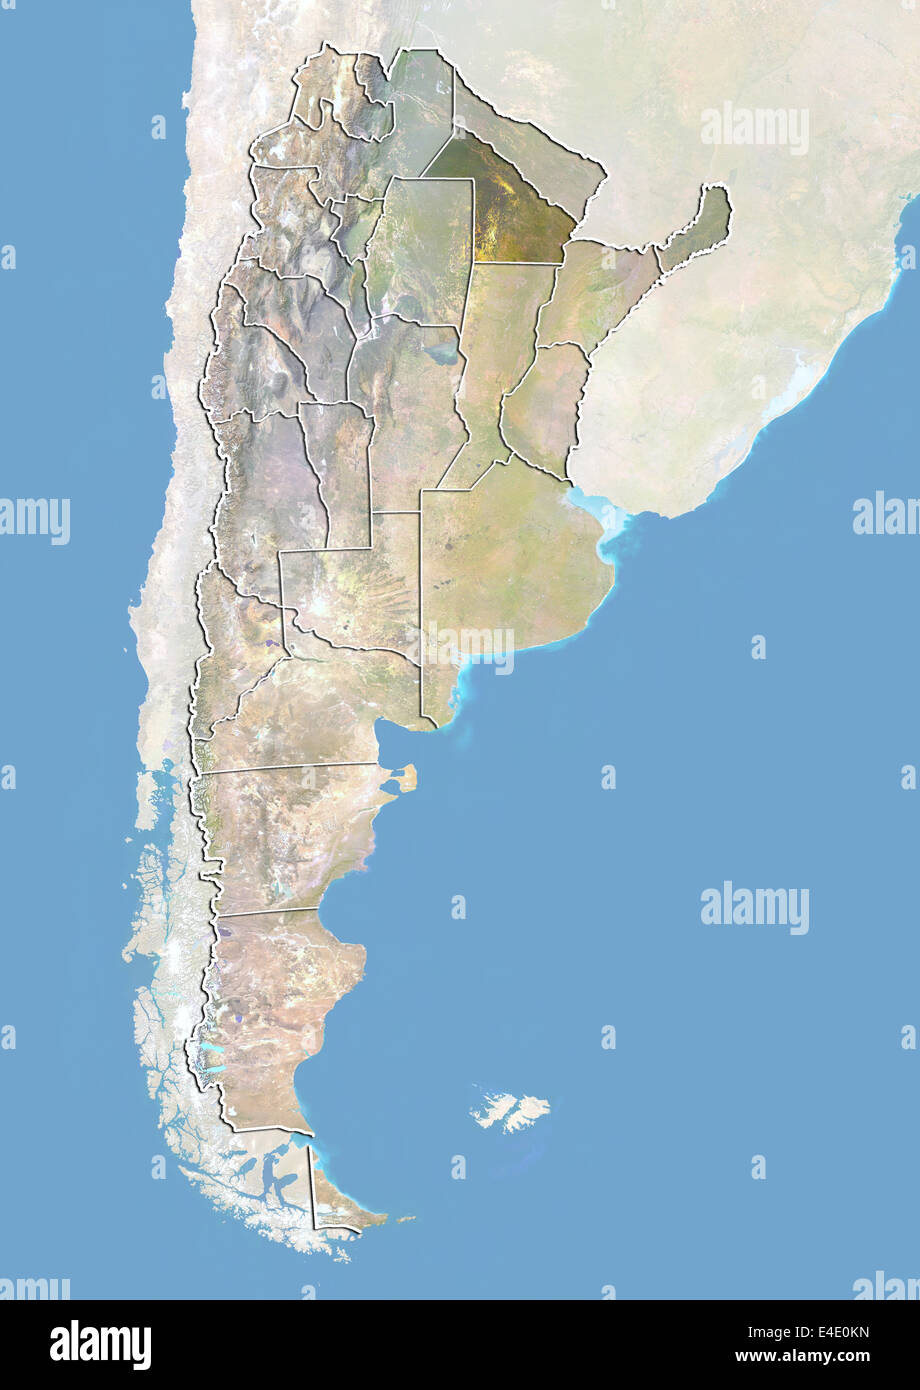 L'Argentine et de la province du Chaco, image satellite avec effet de choc Banque D'Images